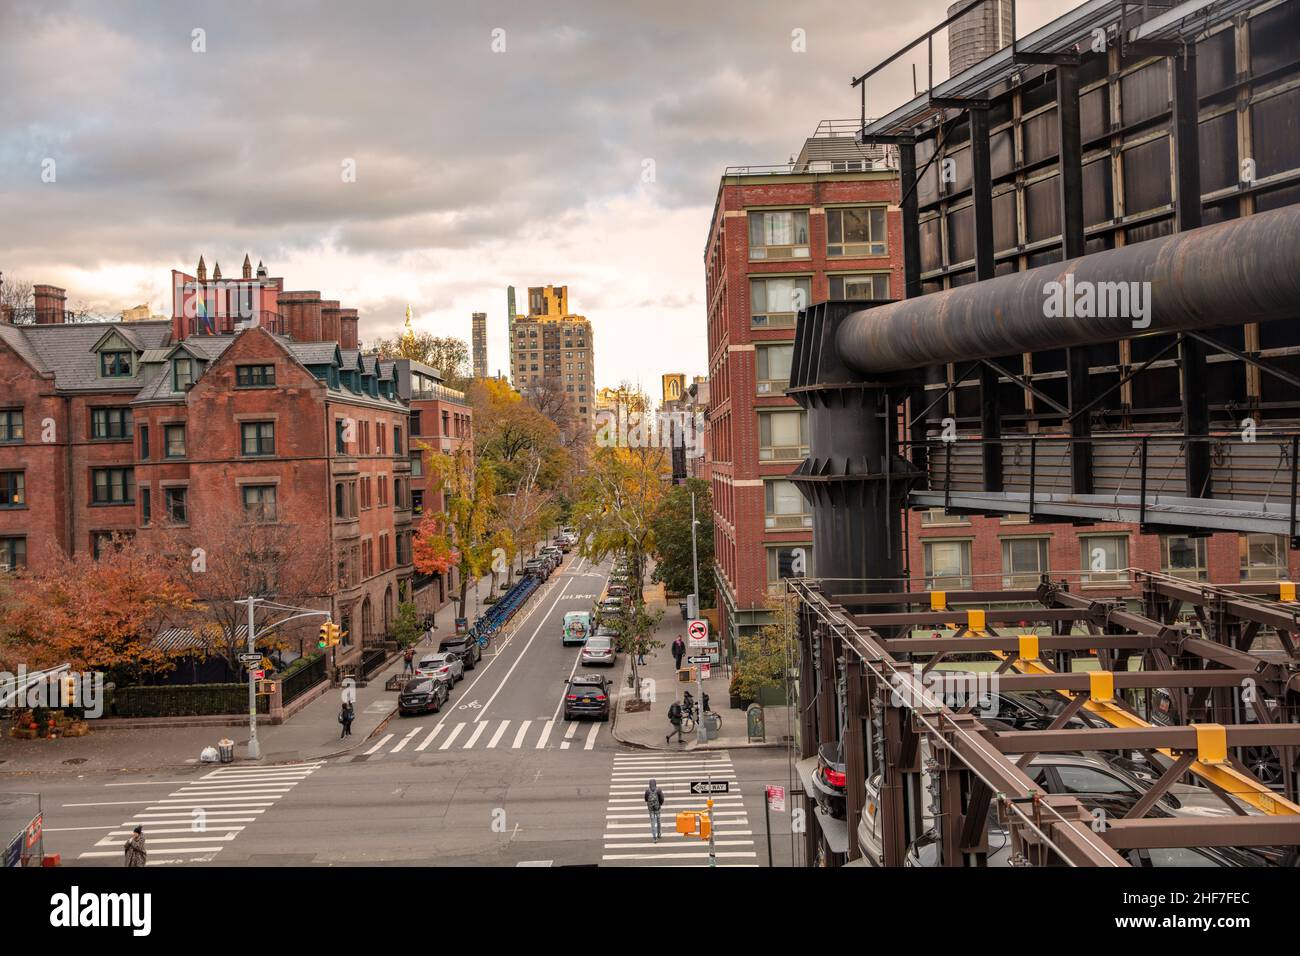 États-Unis, New York City, Manhattan, Greenwich Village, Meetpacking District,bâtiments en brique, scène de rue Banque D'Images